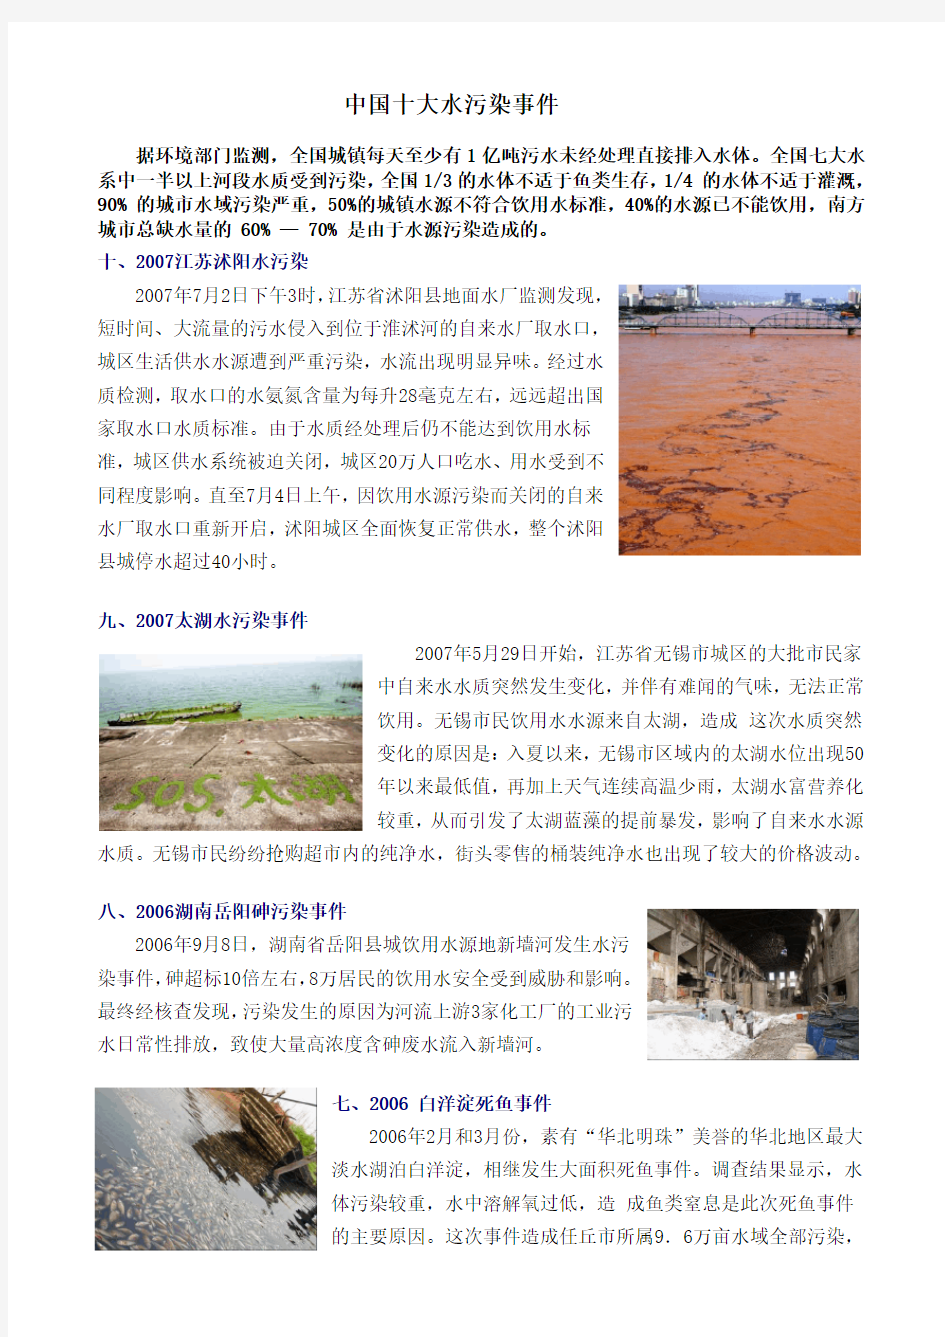 中国十大水污染事件